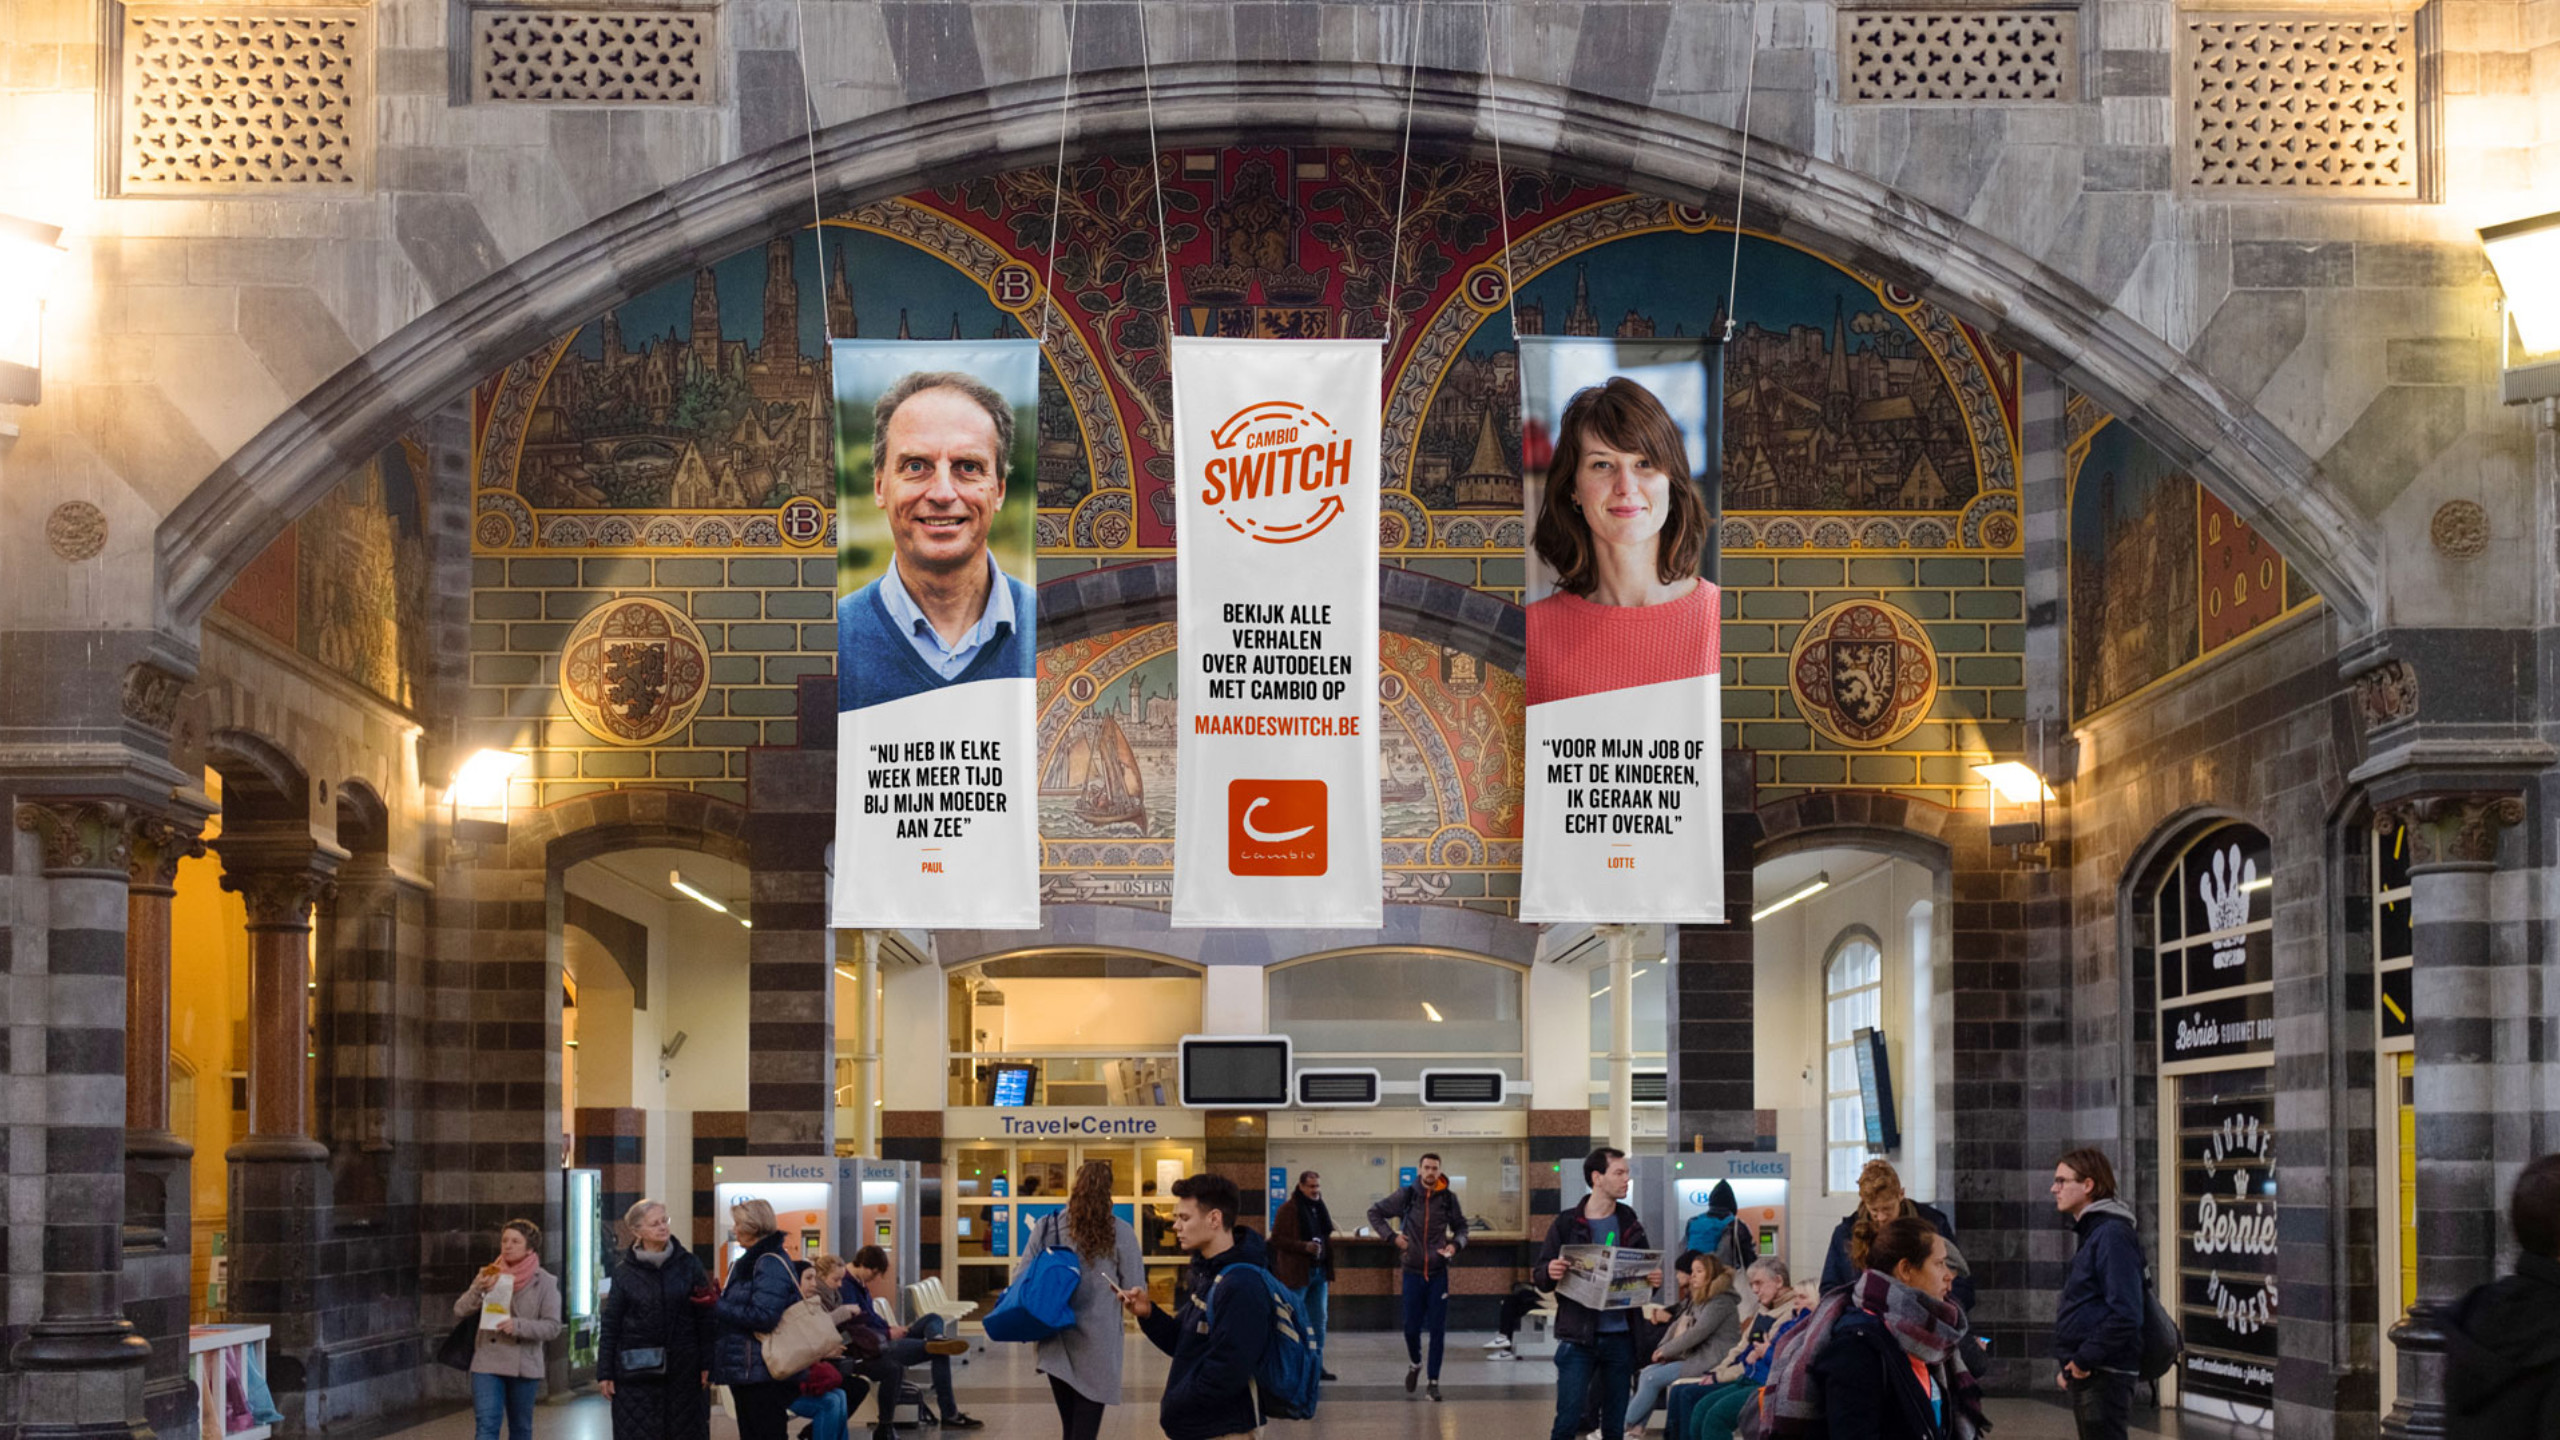 drie grote banners in het Sint-Pieters station Gent, design door Focus voor het switch campagneconcept voor cambio